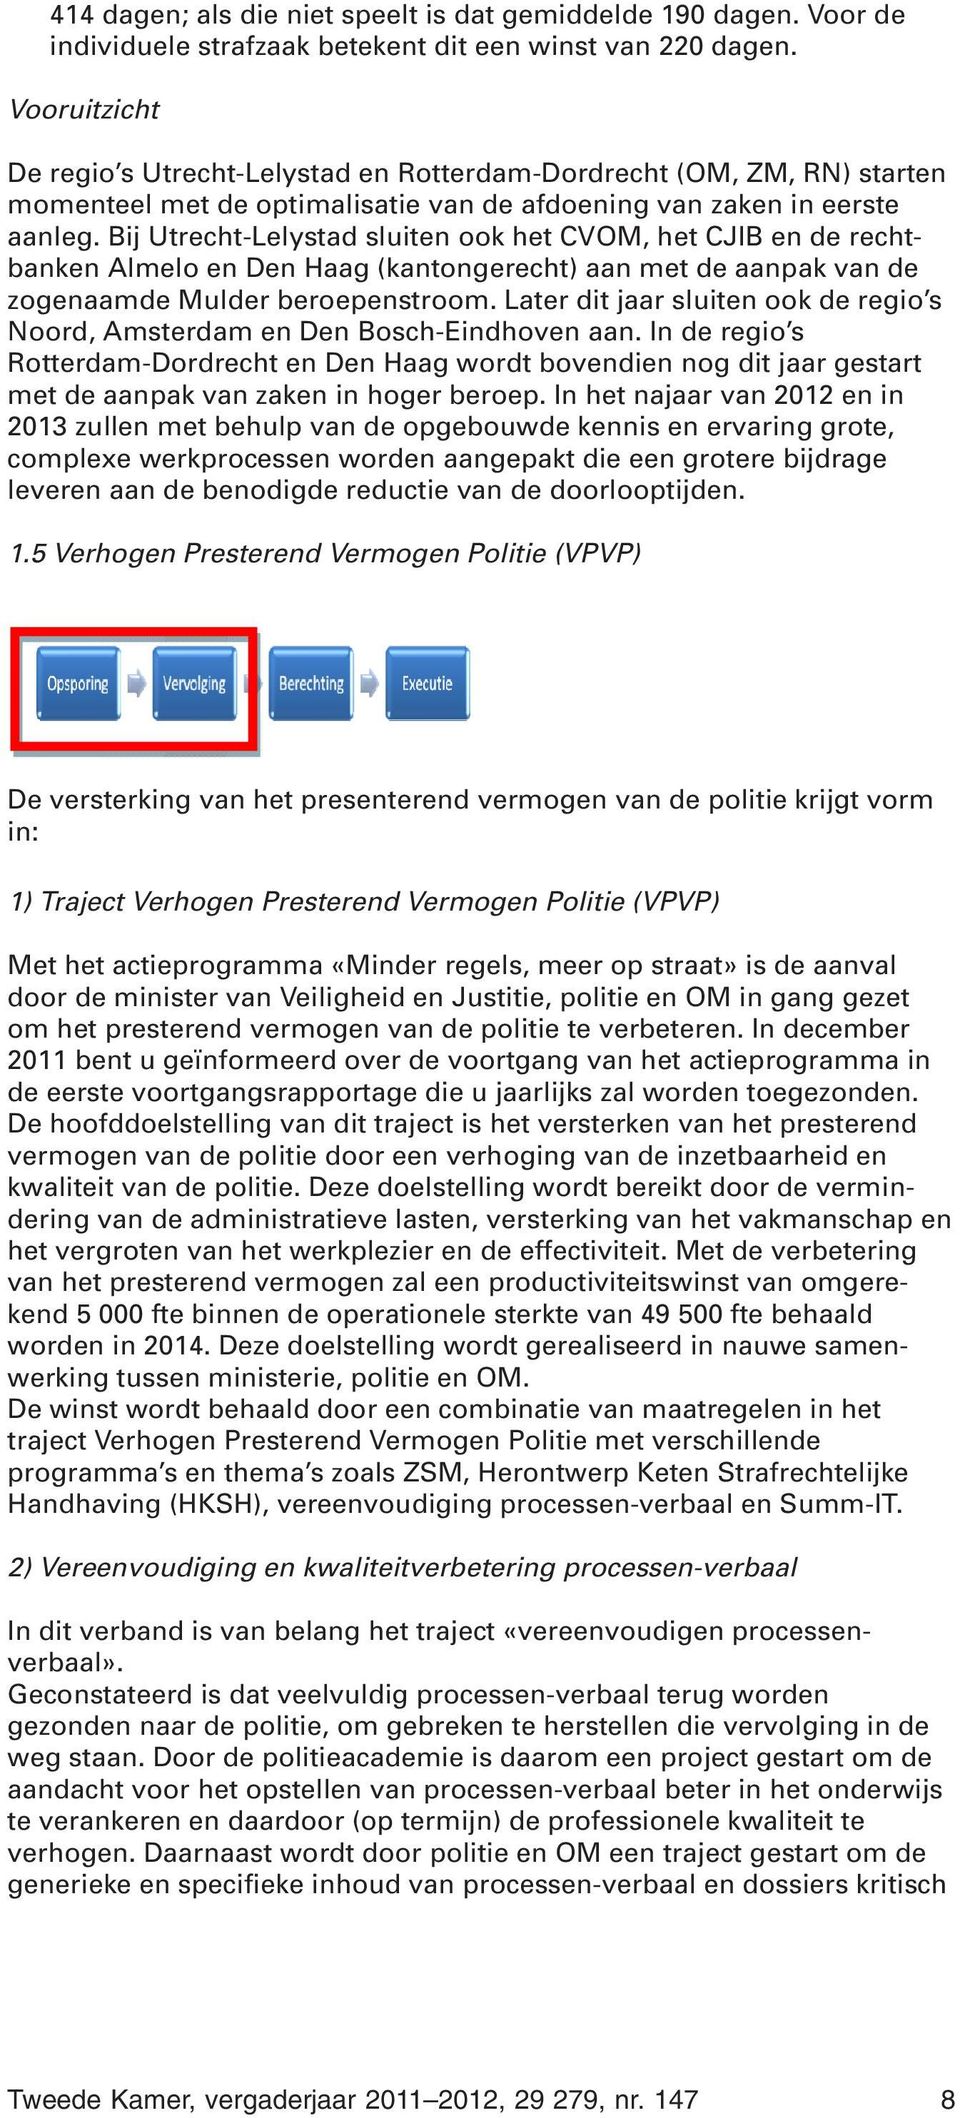 Bij Utrecht-Lelystad sluiten ook het CVOM, het CJIB en de rechtbanken Almelo en Den Haag (kantongerecht) aan met de aanpak van de zogenaamde Mulder beroepenstroom.